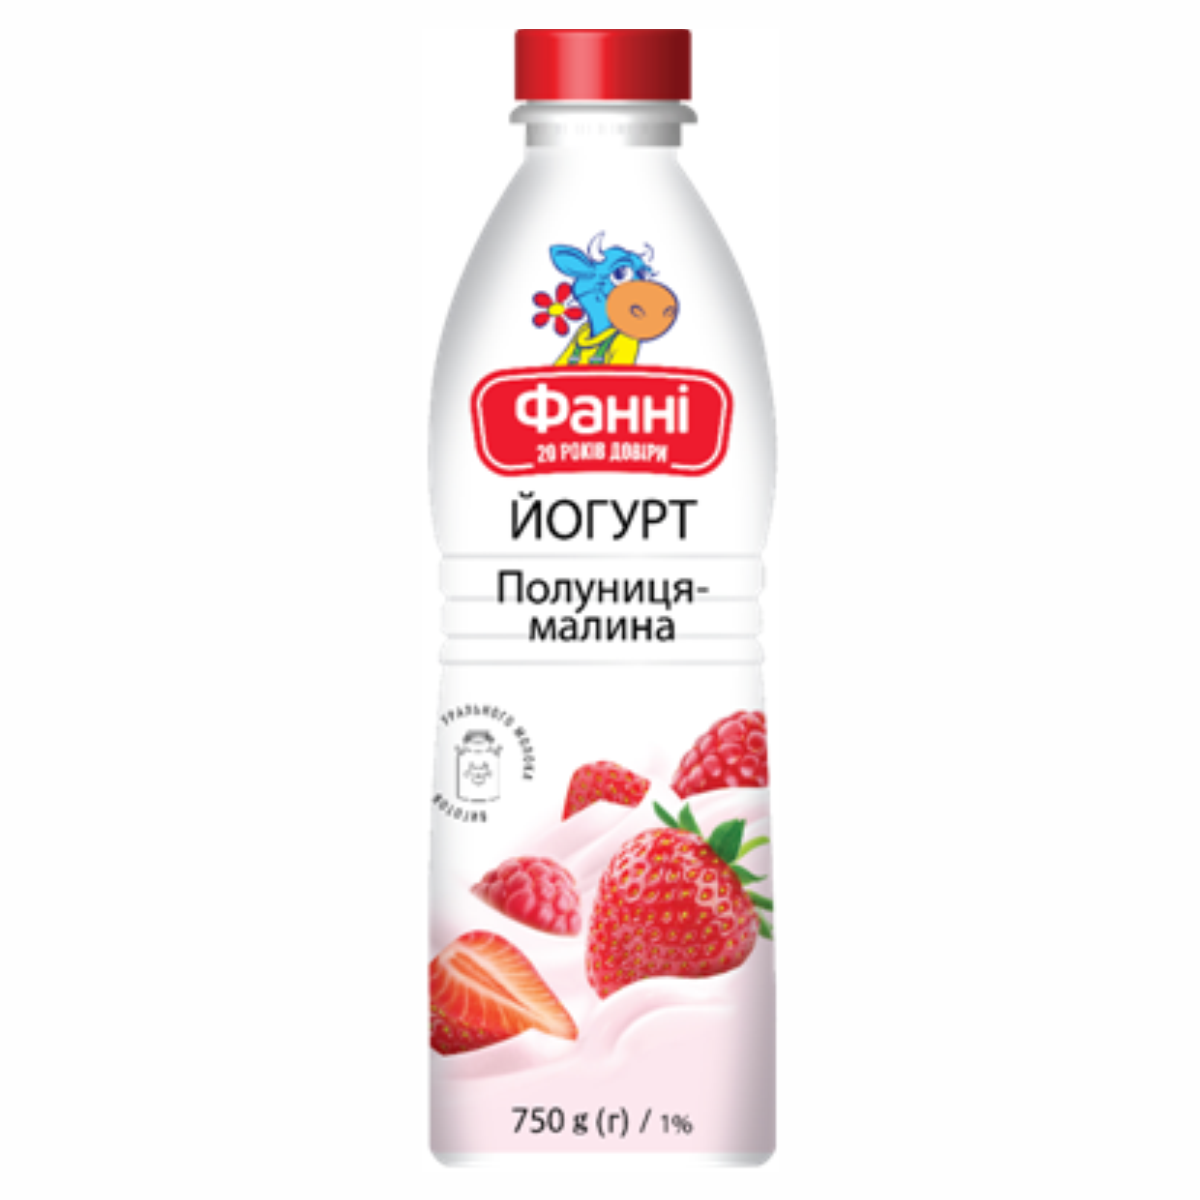 Йогурт Фанні 1% 750г ПолуницяМалина